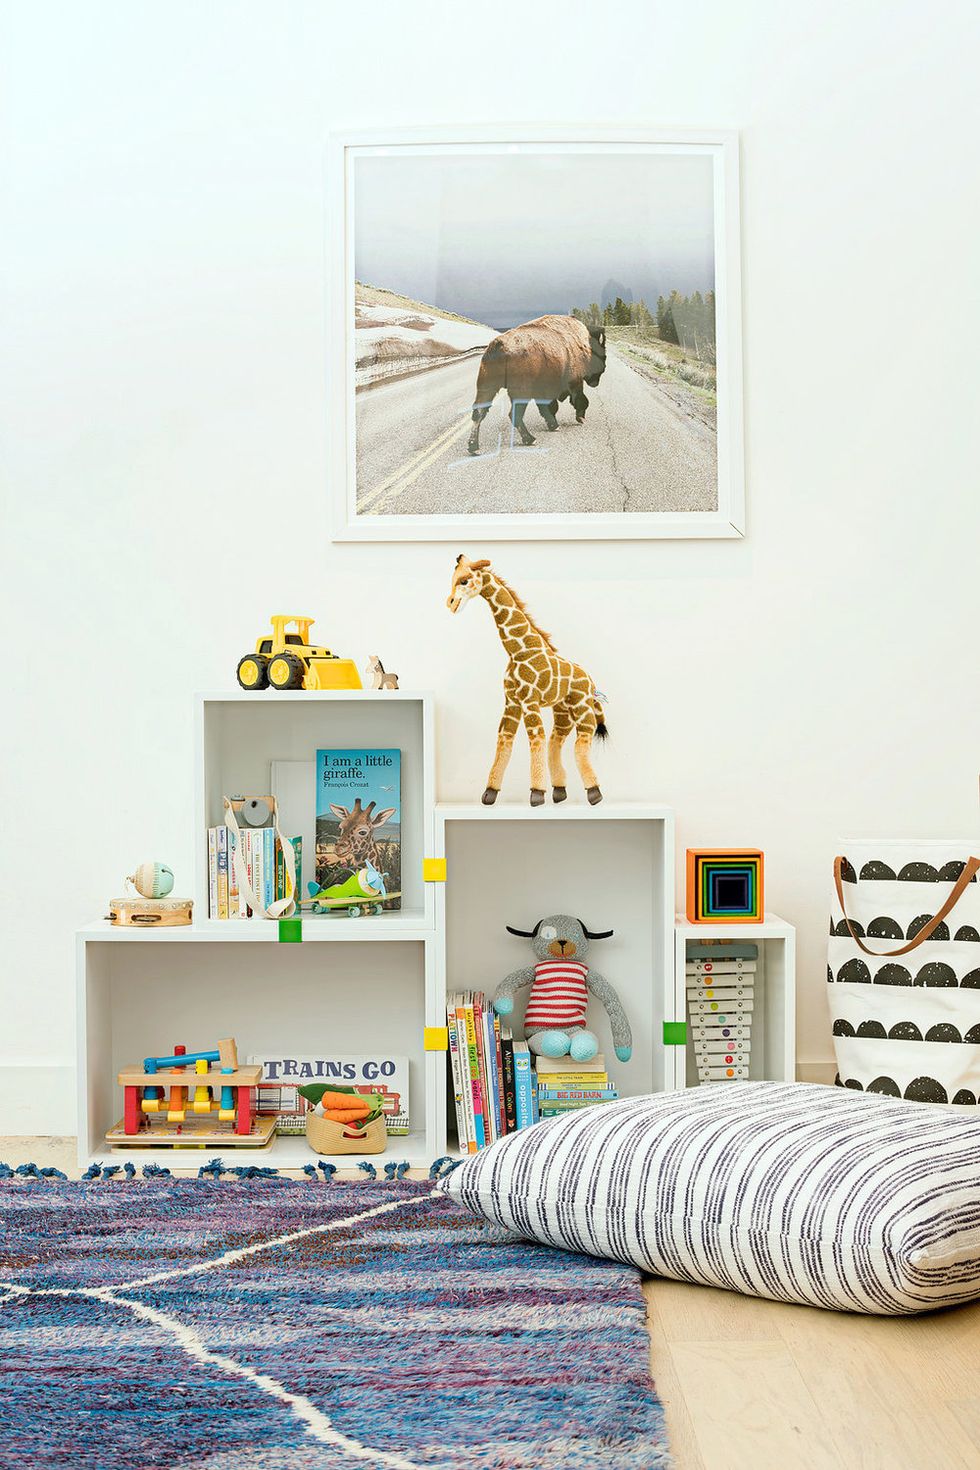 30 Best Toy Storage Ideas - DIY Kids' Room Organizer Ideas